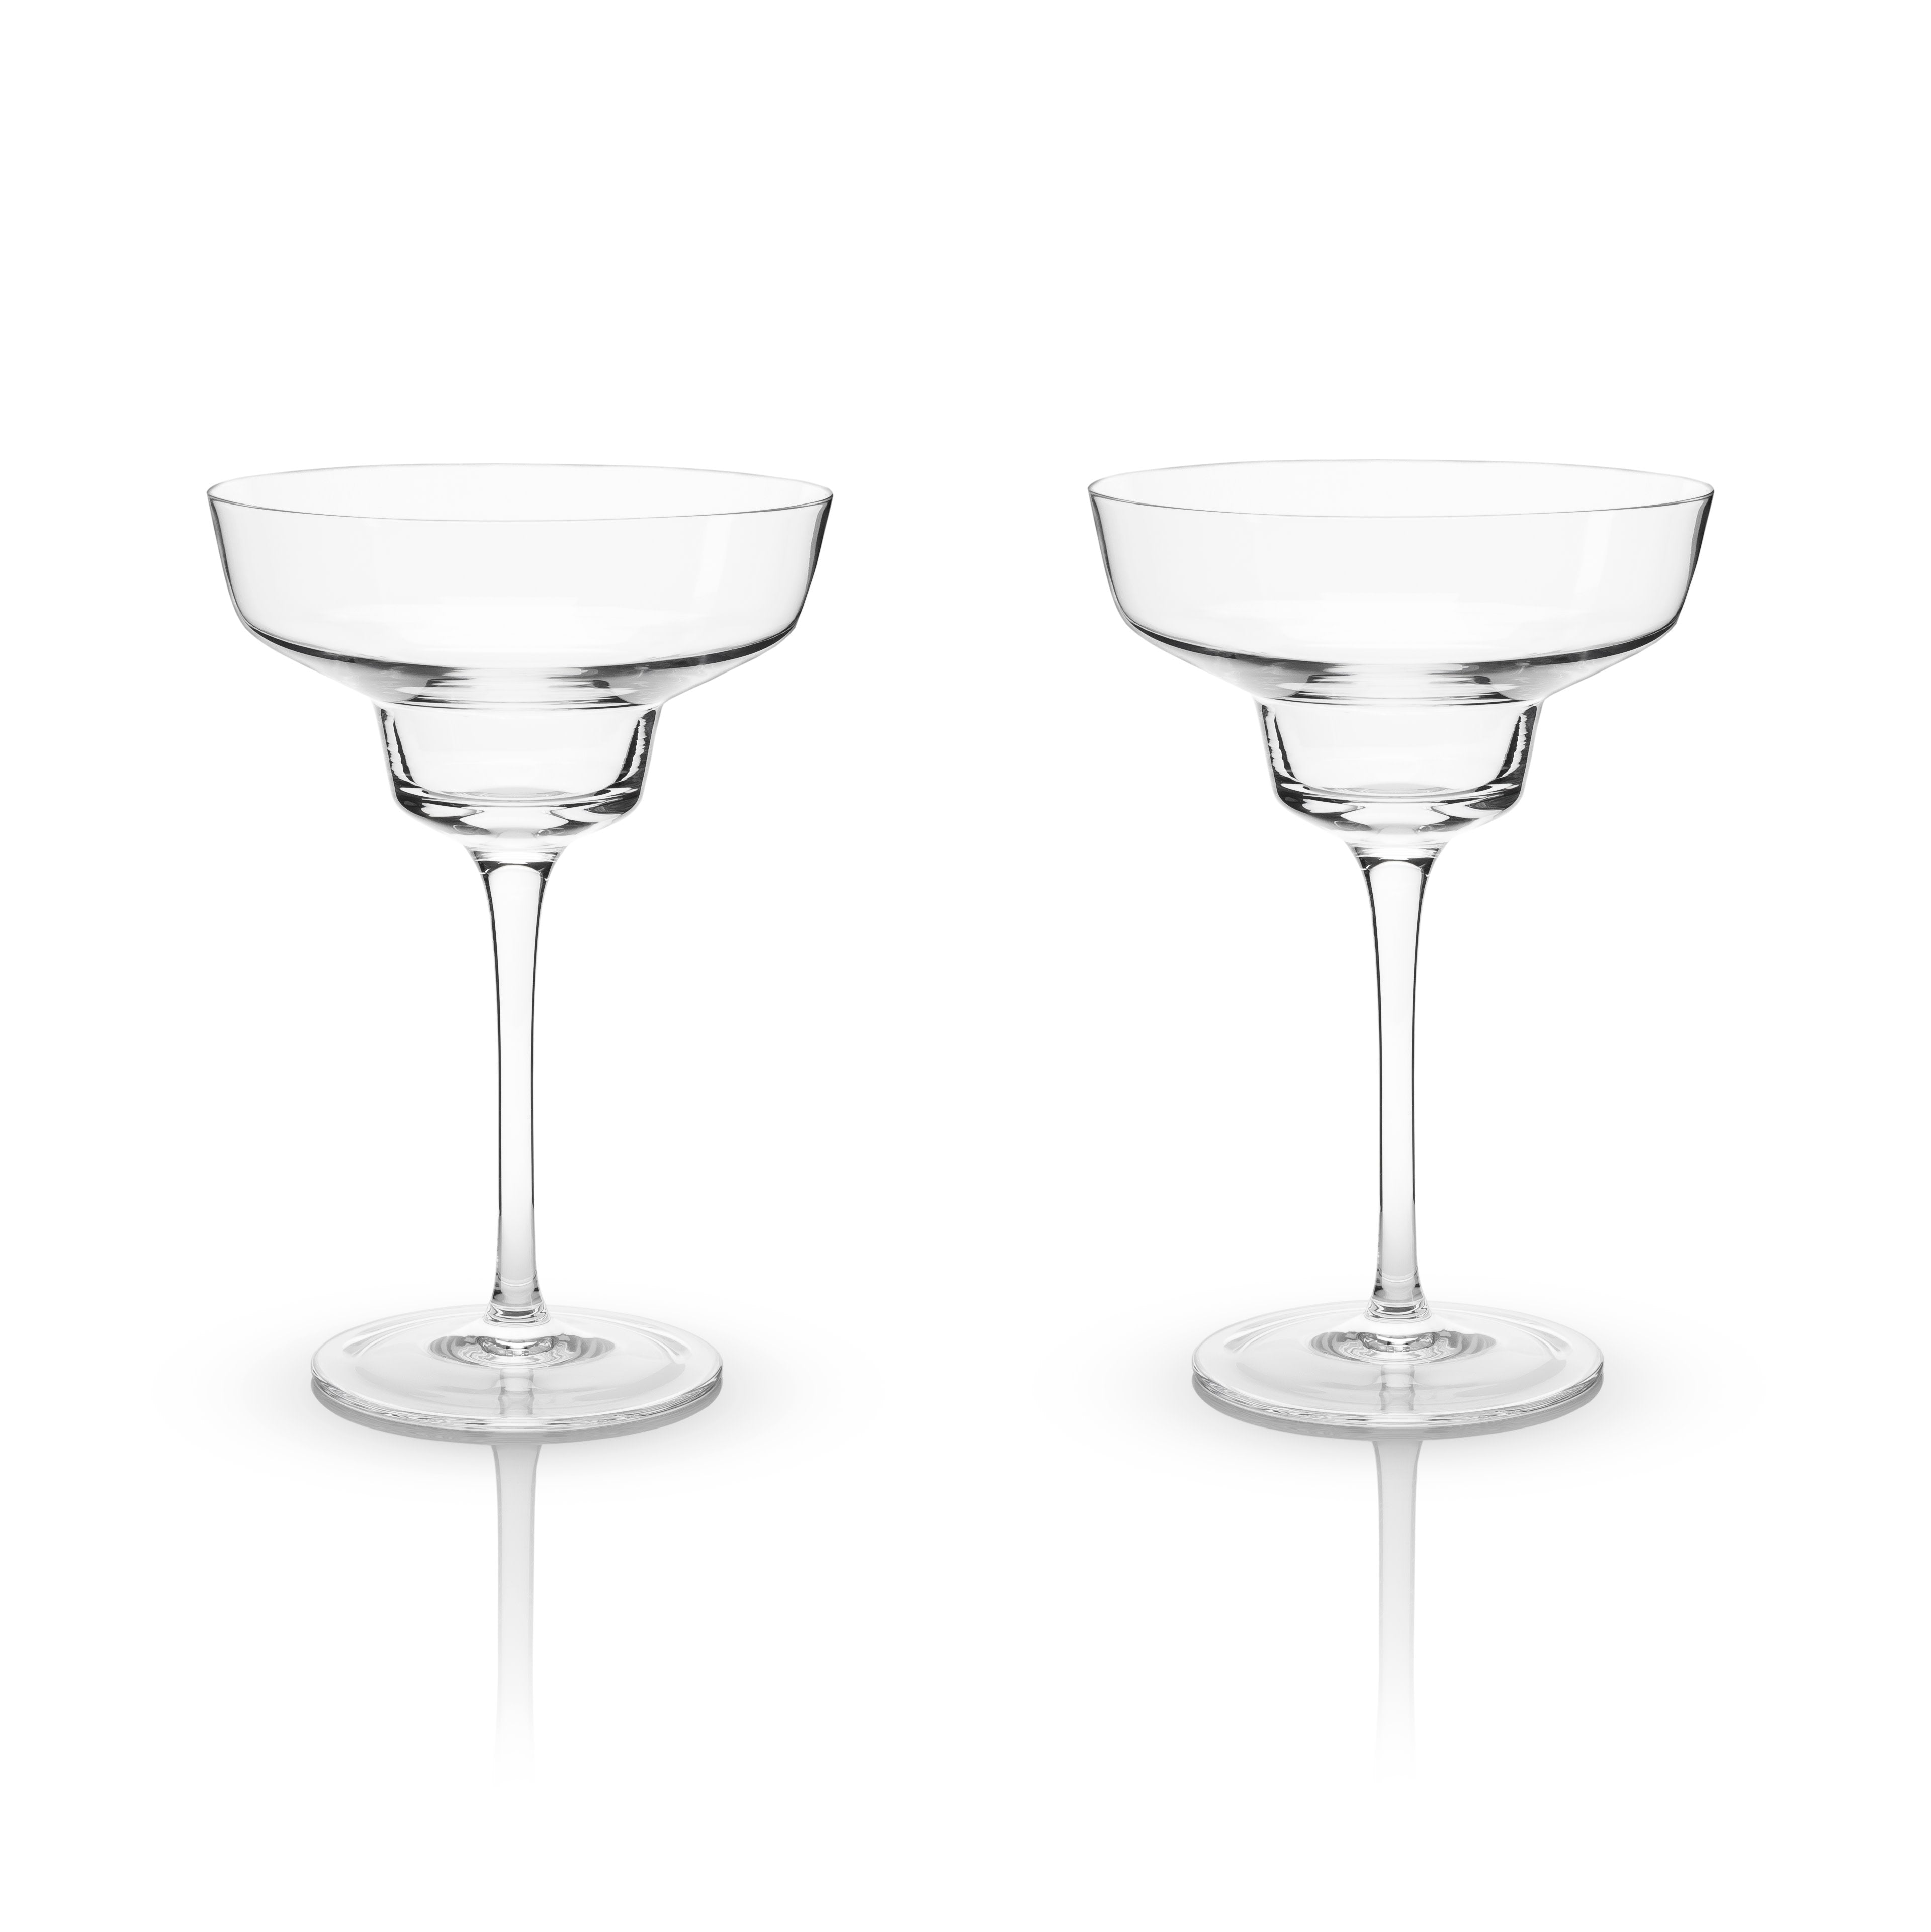 Short Cocktail Glasses – Viski